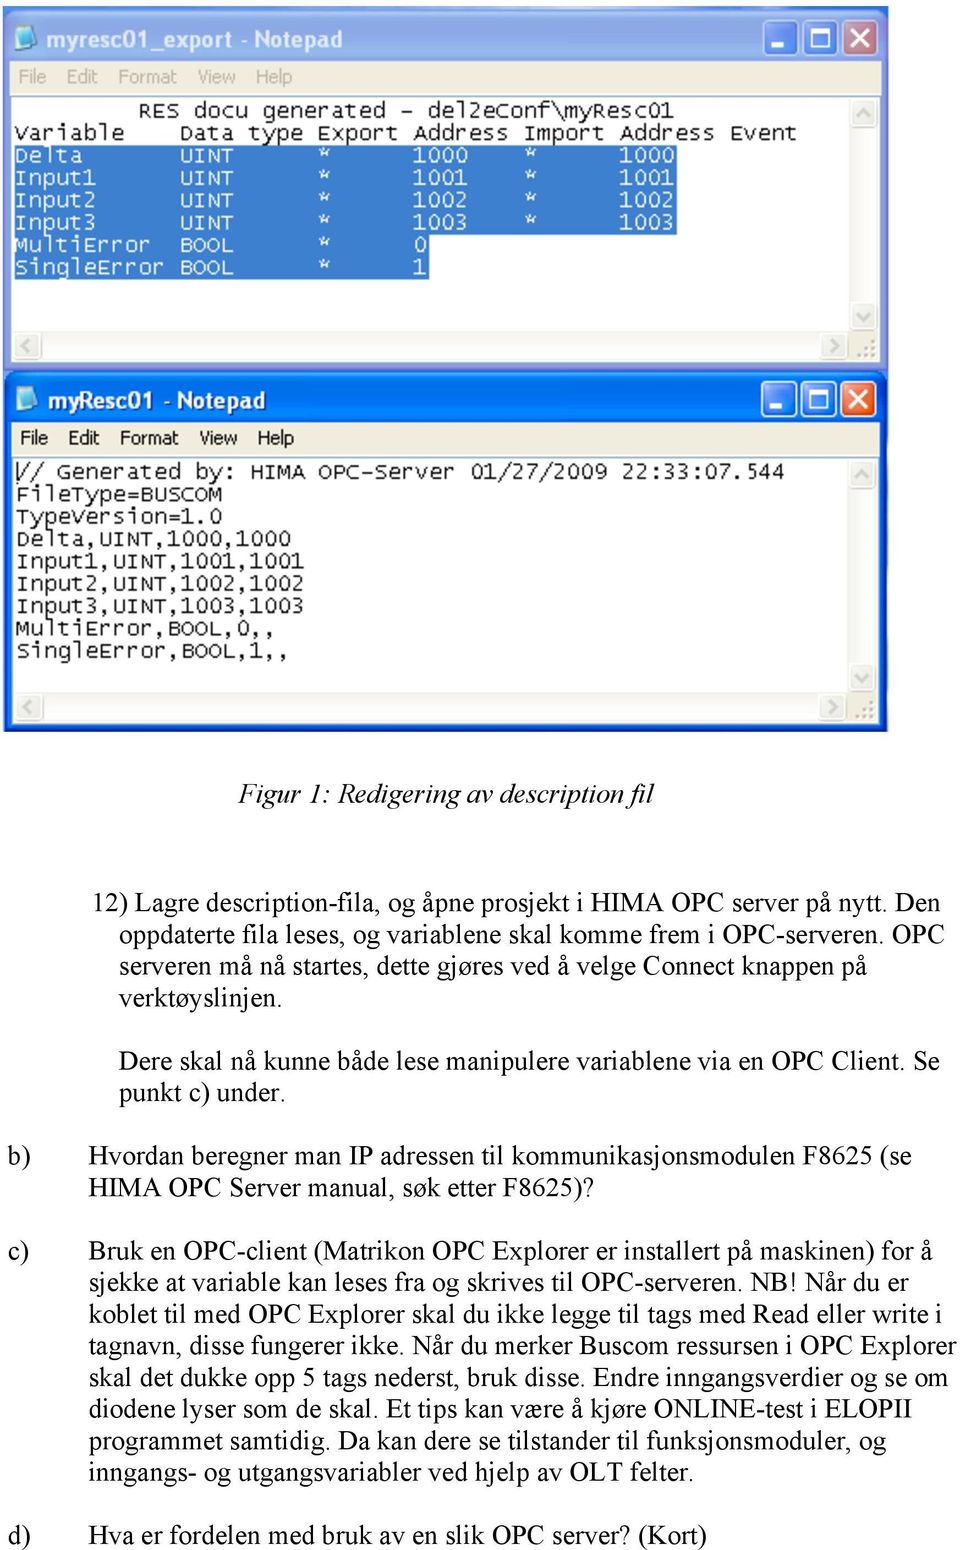 b) Hvordan beregner man IP adressen til kommunikasjonsmodulen F8625 (se HIMA OPC Server manual, søk etter F8625)?